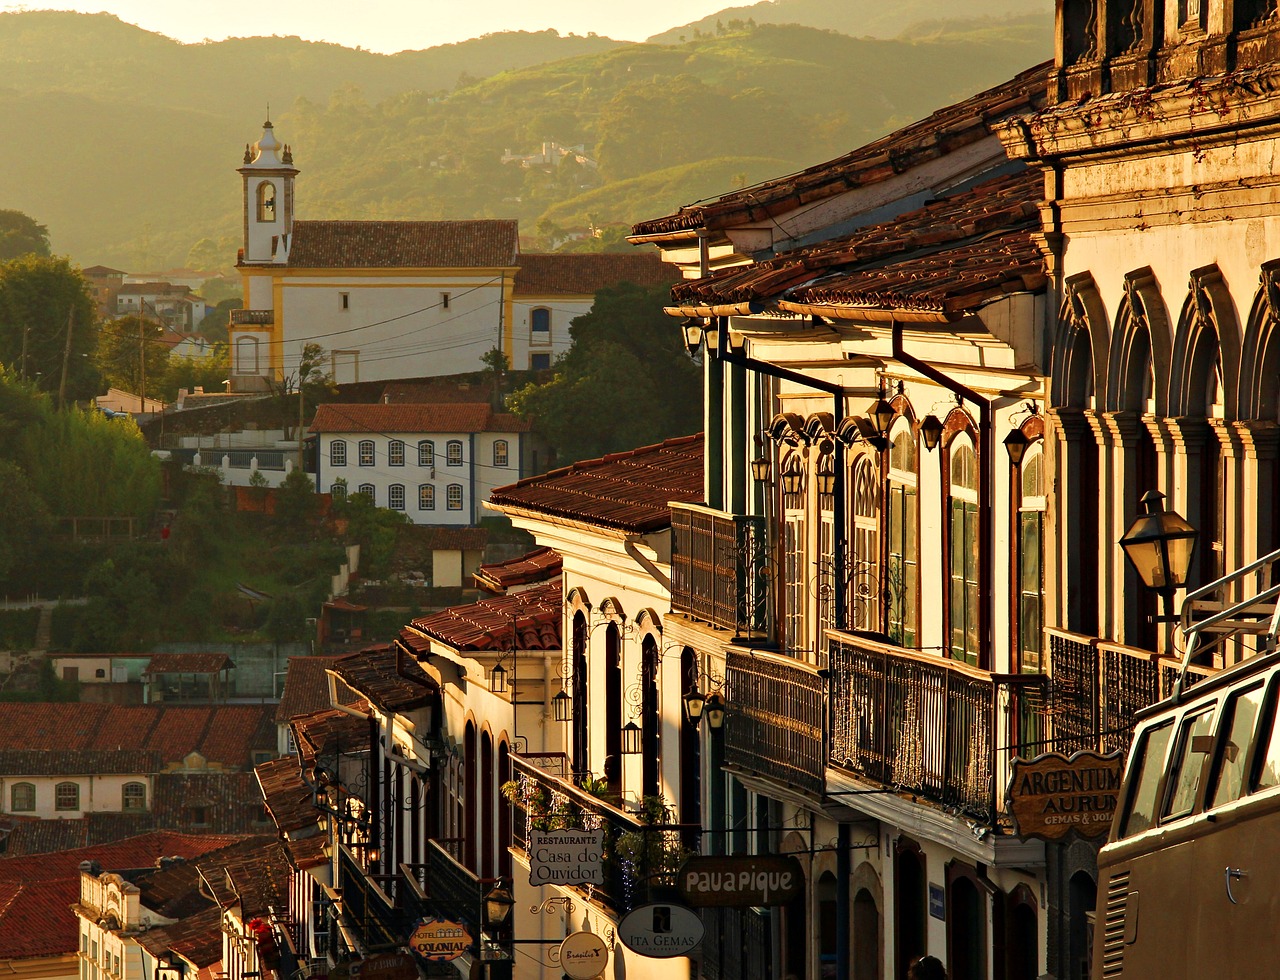 Fotografia da cidade mineira de Ouro Preto.